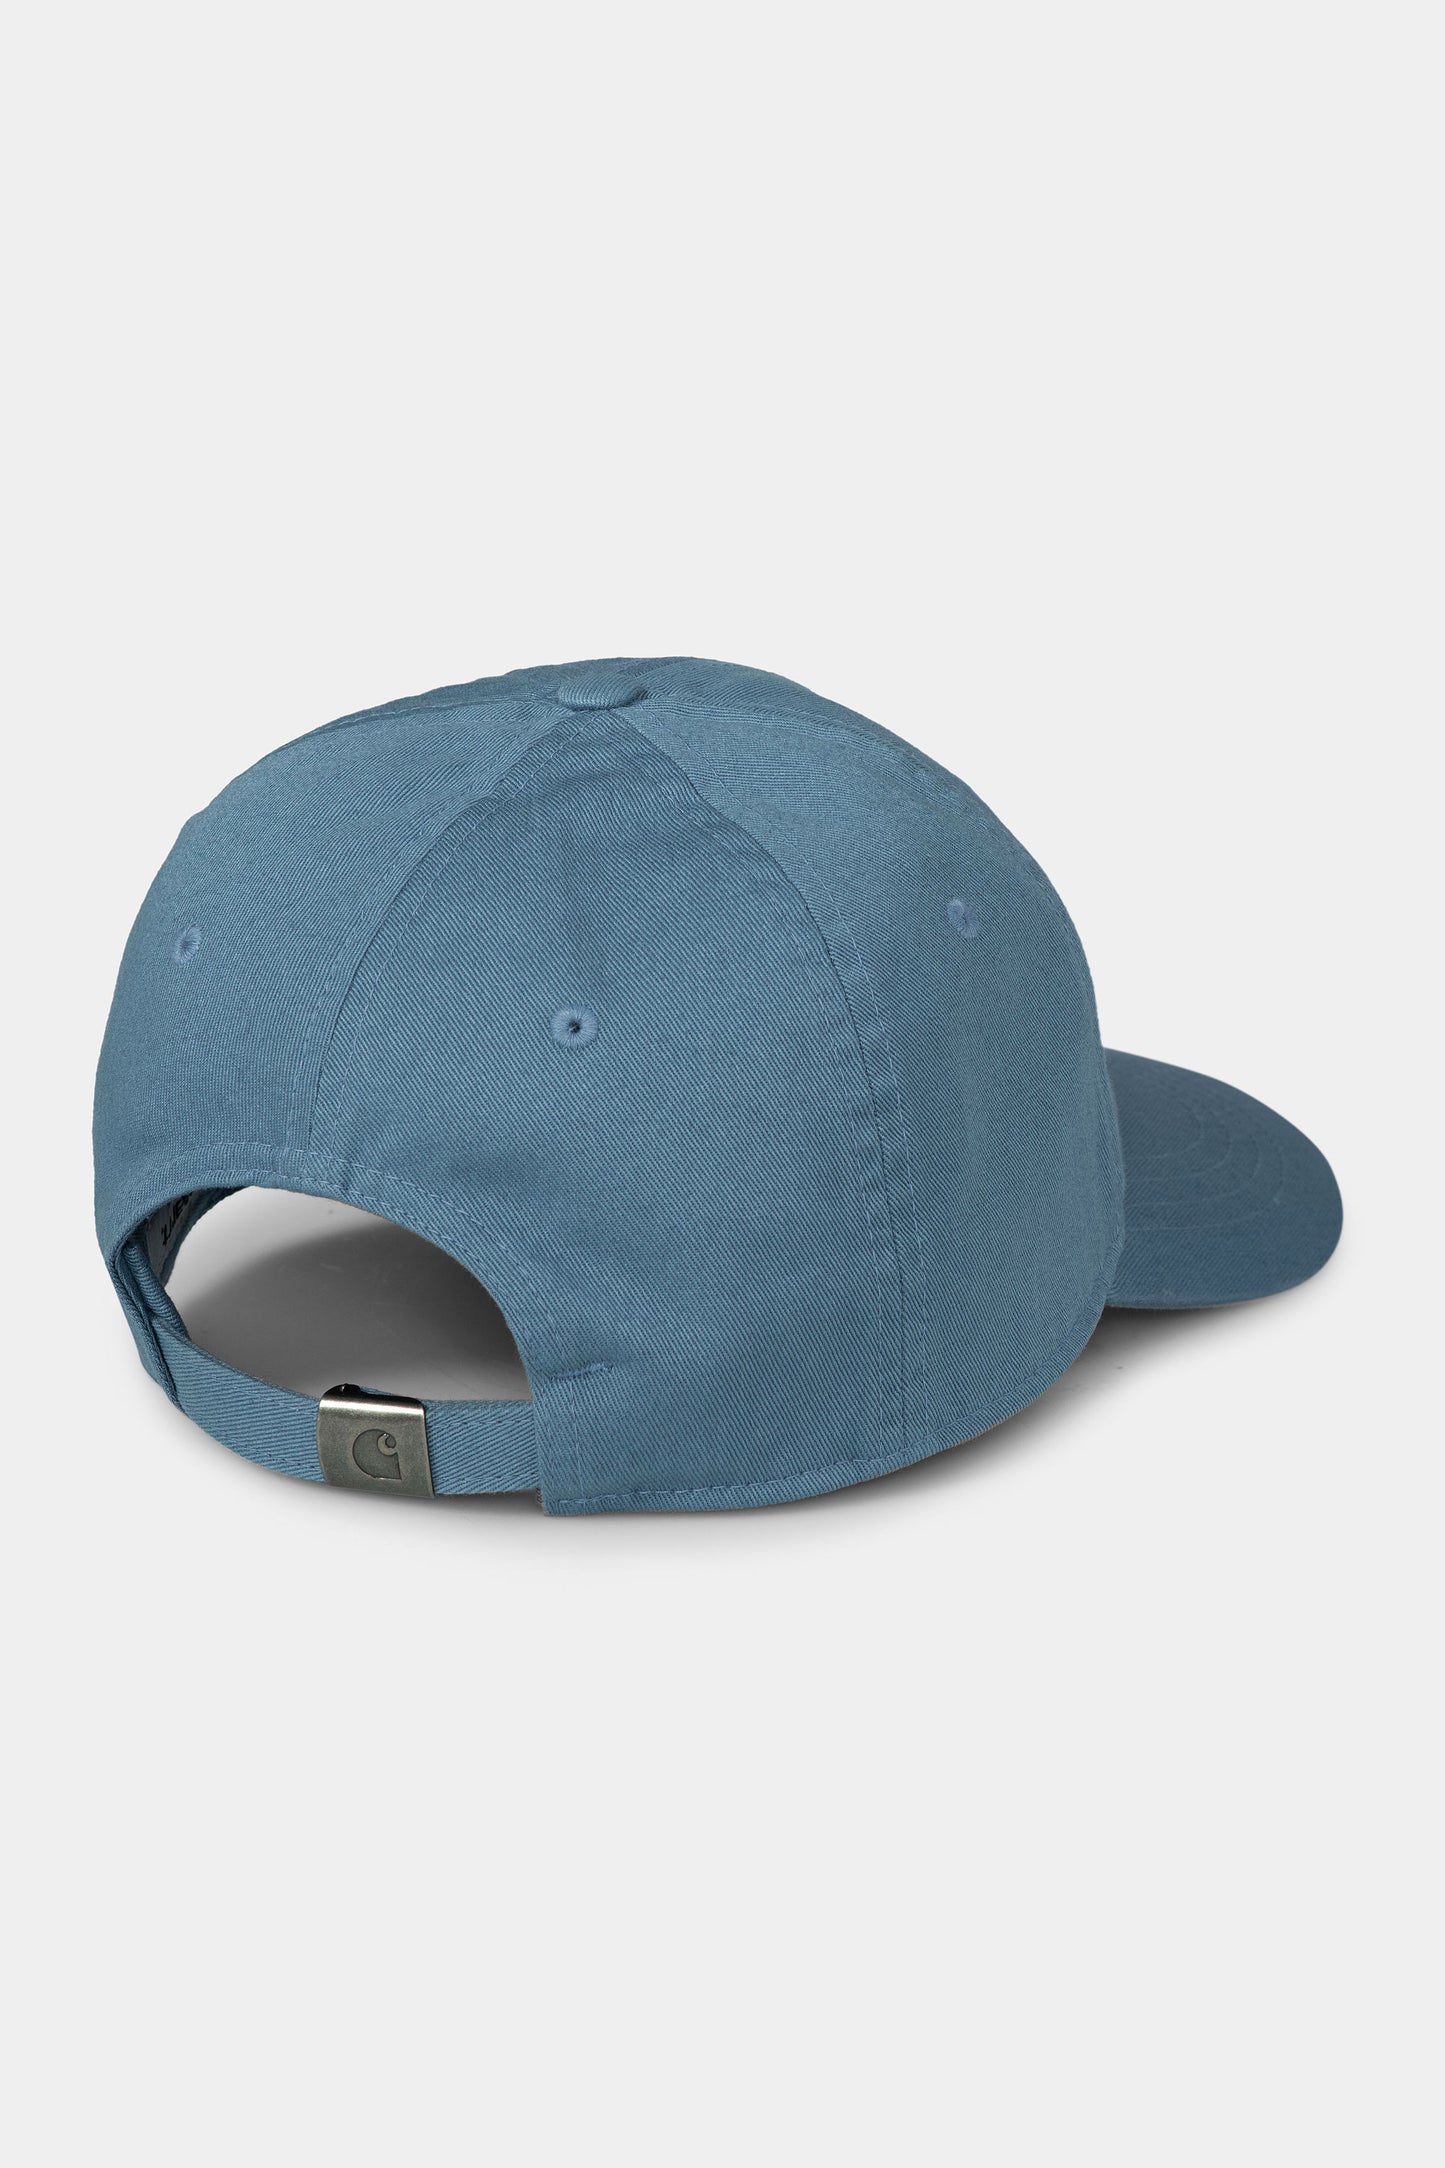 Pukas-Surf-Shop-carhartt-hat-Madison-Logo-Cap-vancouver-blue